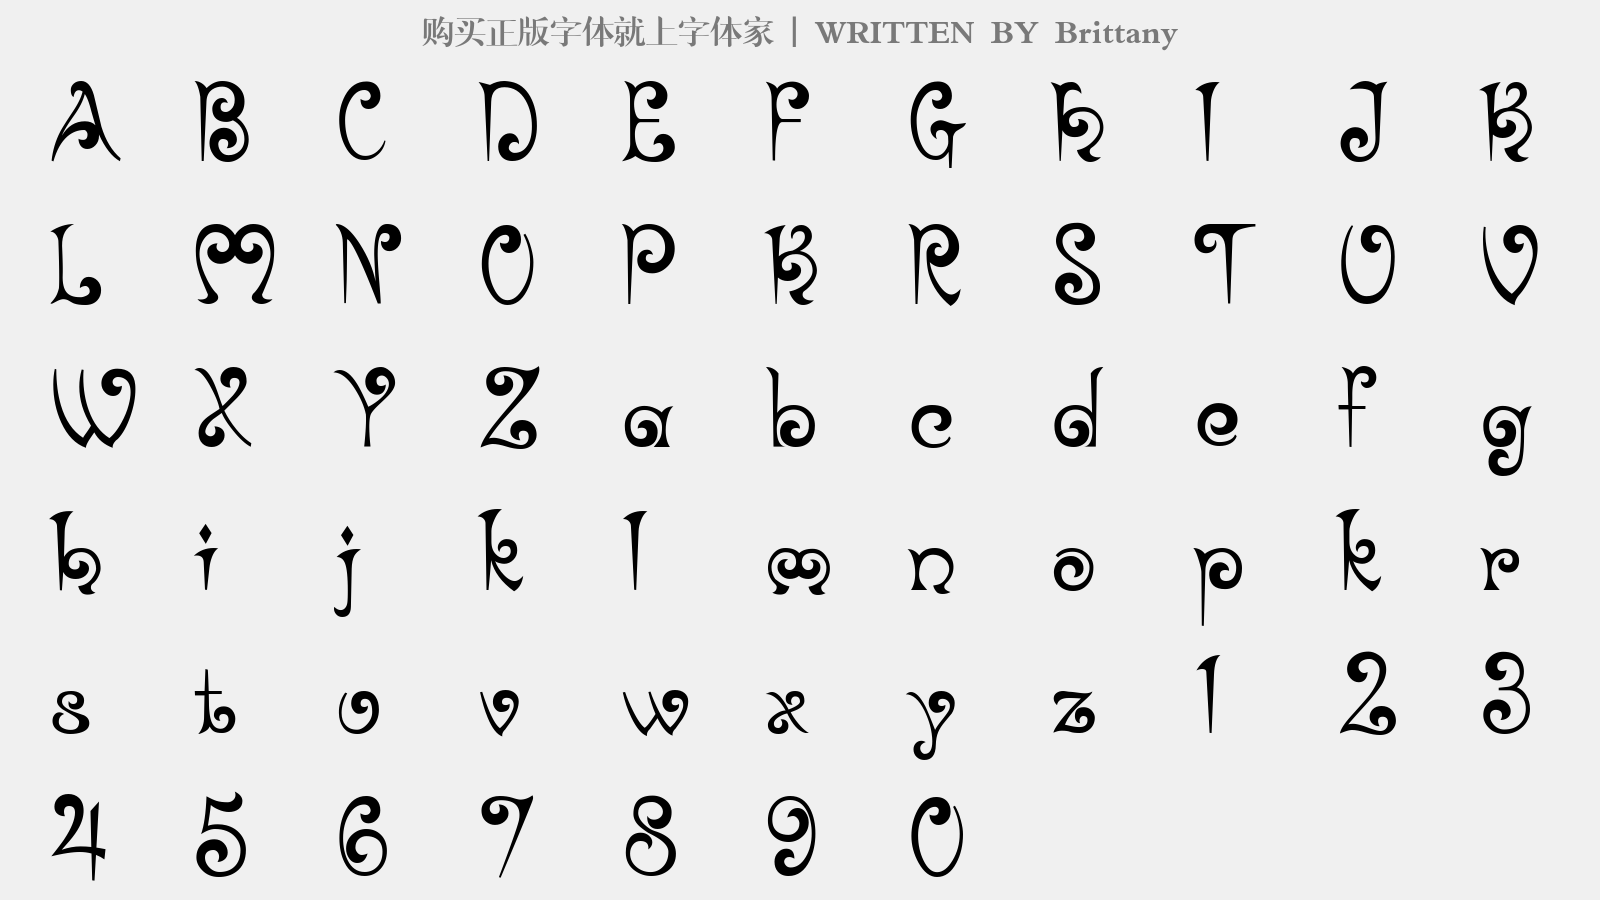 Brittany - 大写字母/小写字母/数字